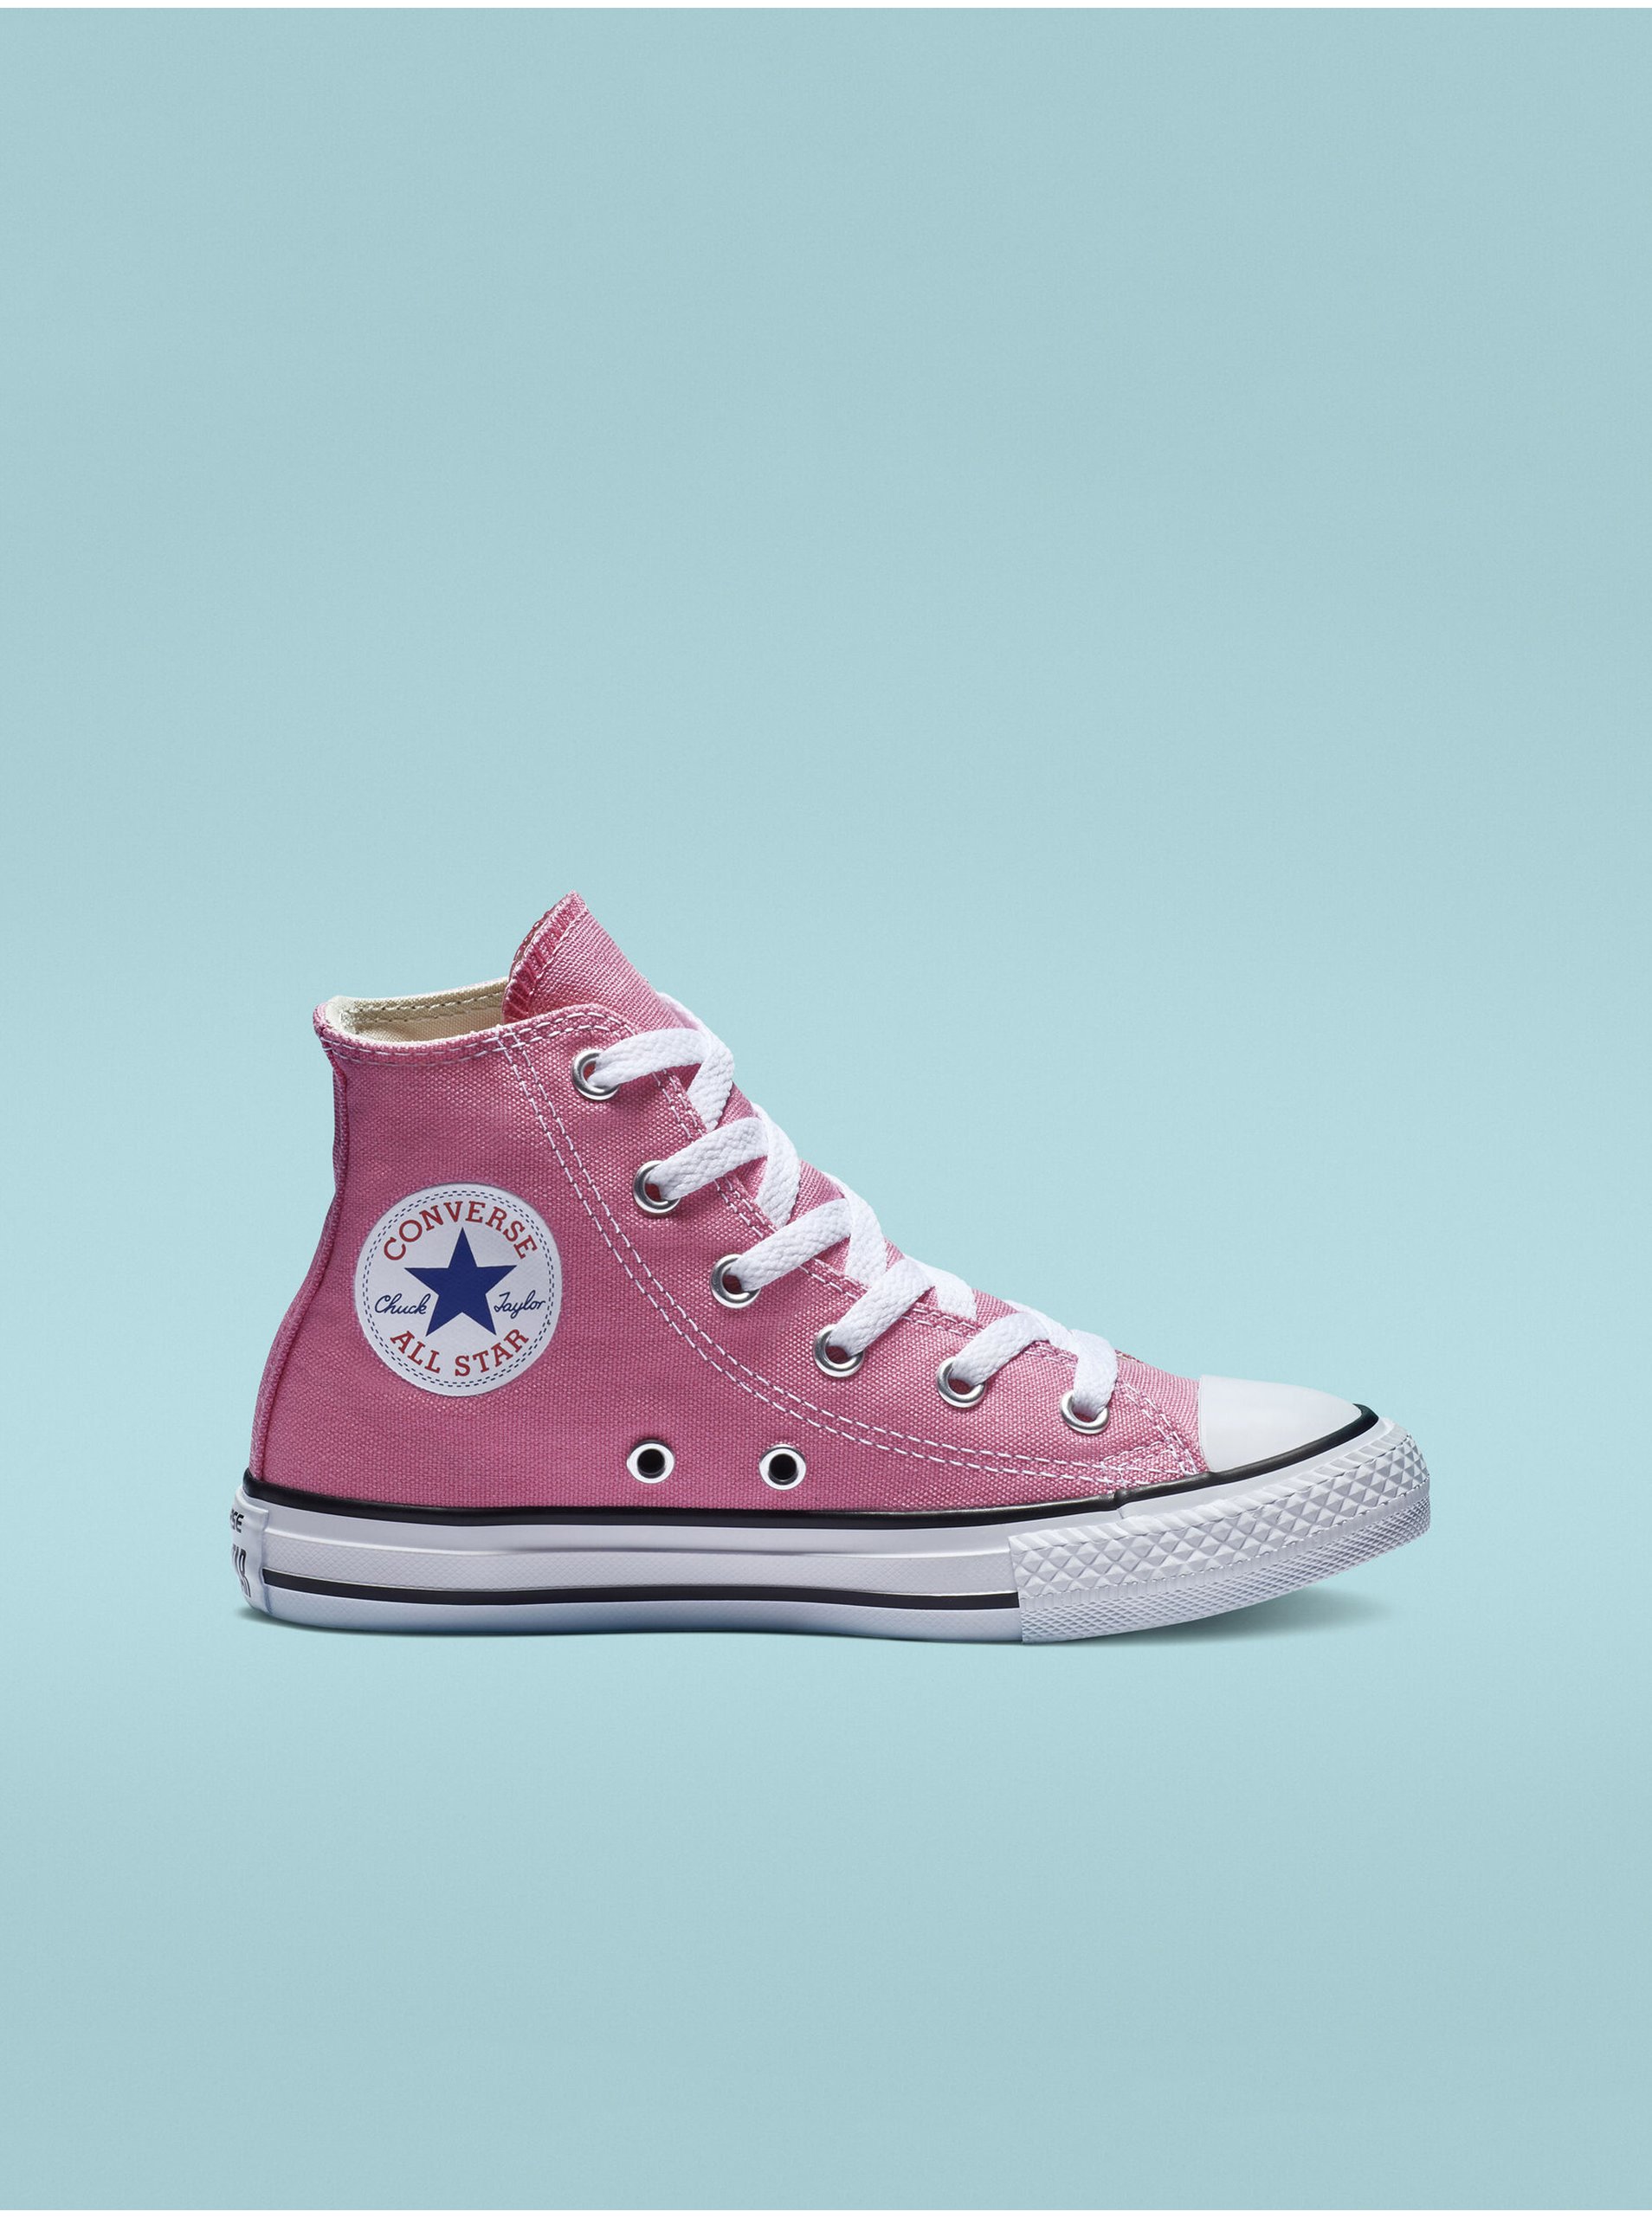 E-shop Růžové holčičí kotníkové tenisky Converse Chuck Taylor All Star